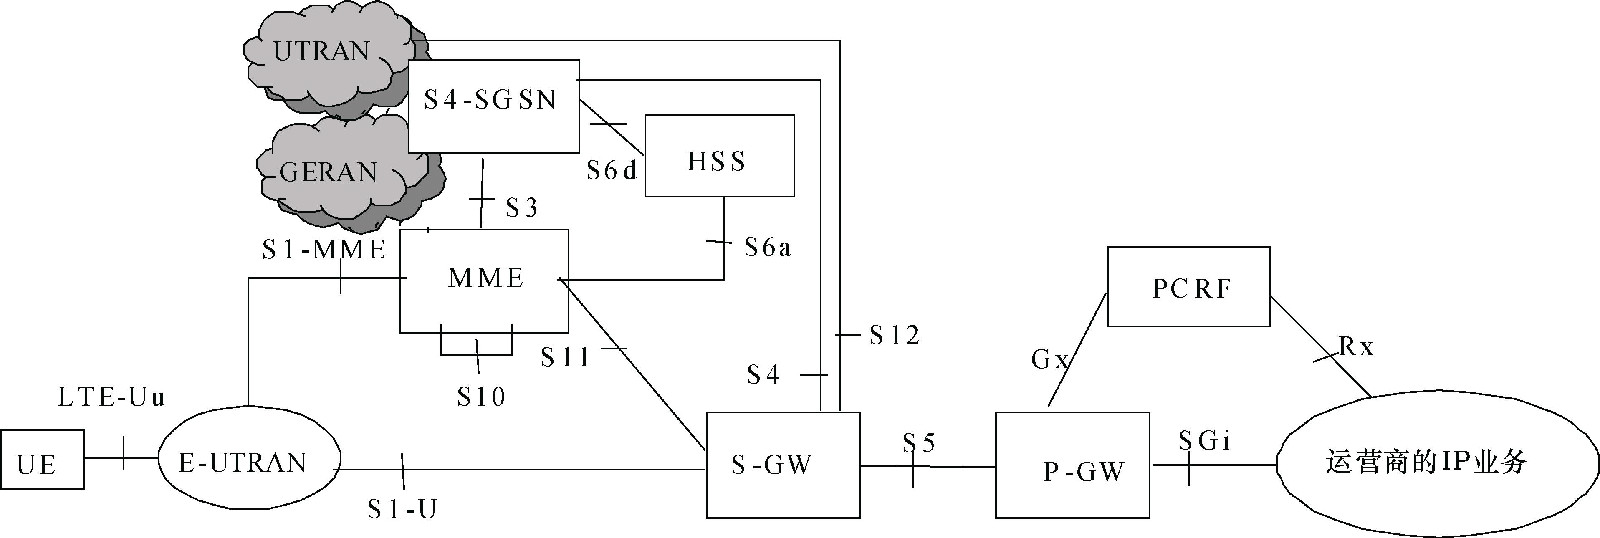 圖2  3GPP非漫遊架構—S-GW與P-GW分設